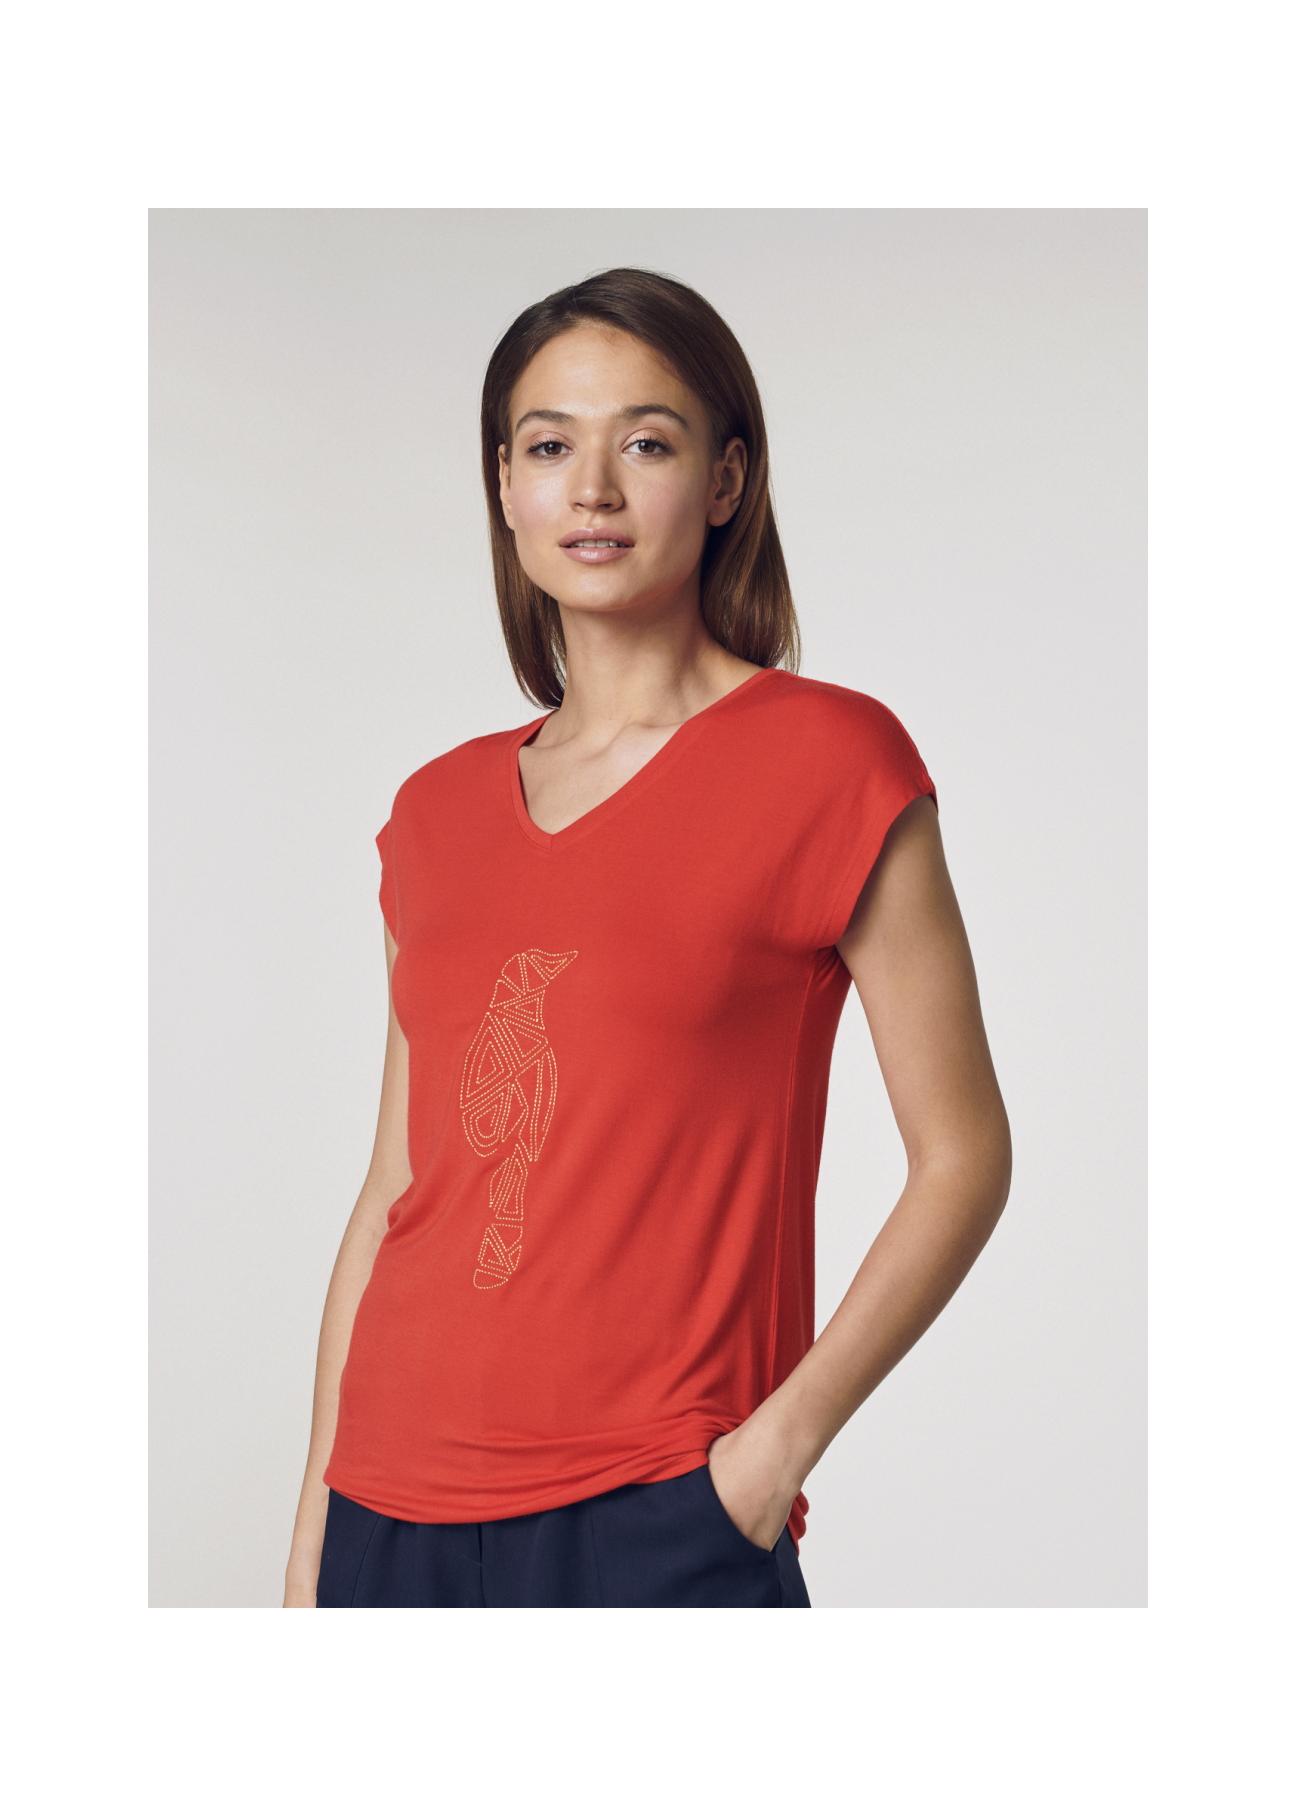 Czerwony T-shirt damski z aplikacją TSHDT-0066-42(W21)